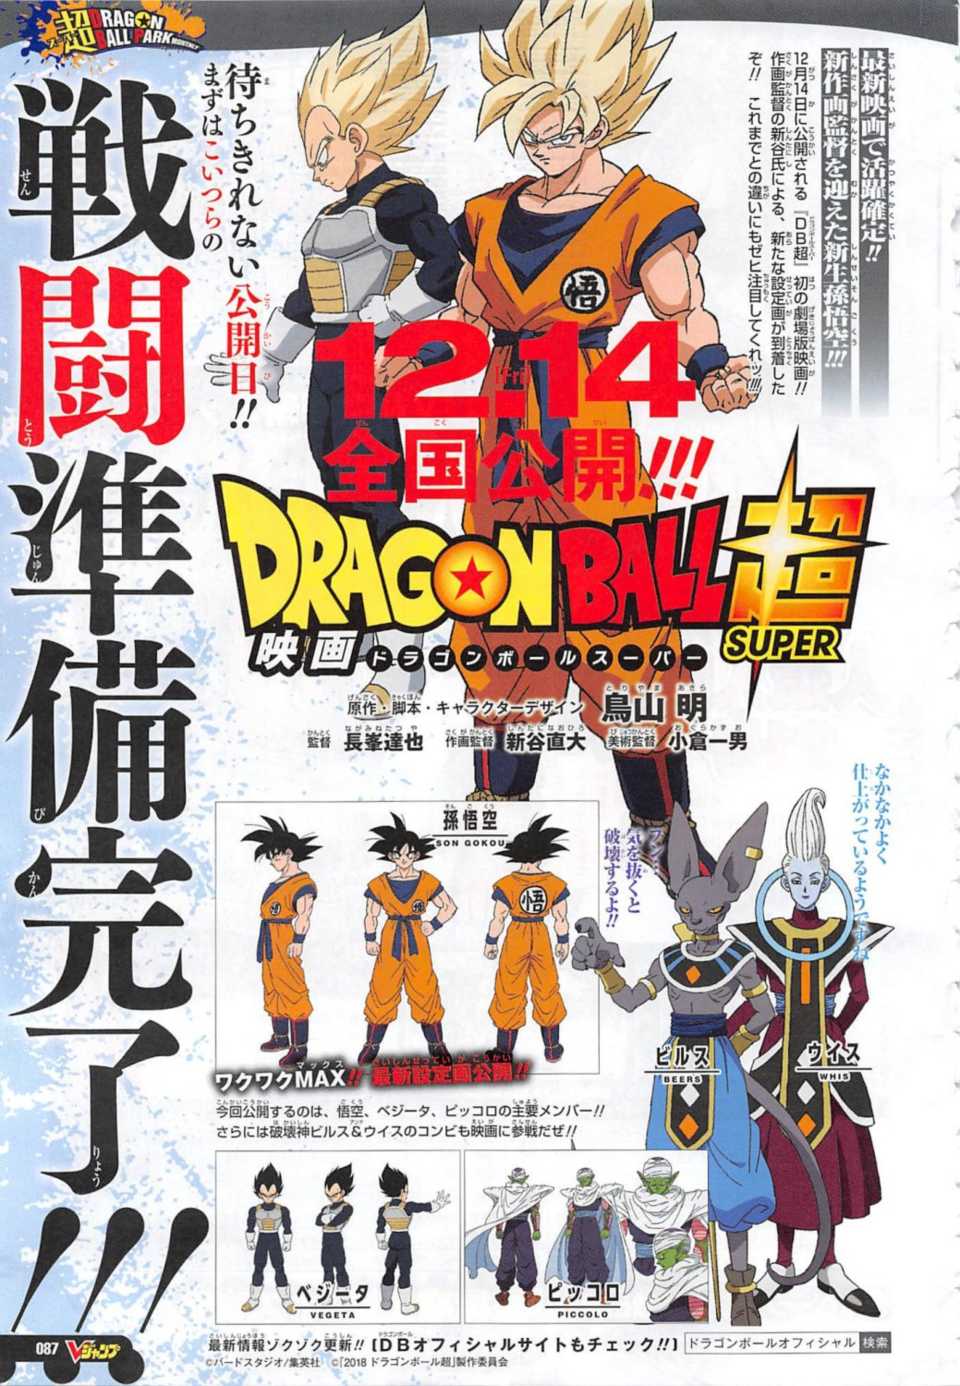 Nueva imagen promocional de la película de Dragon Ball Super